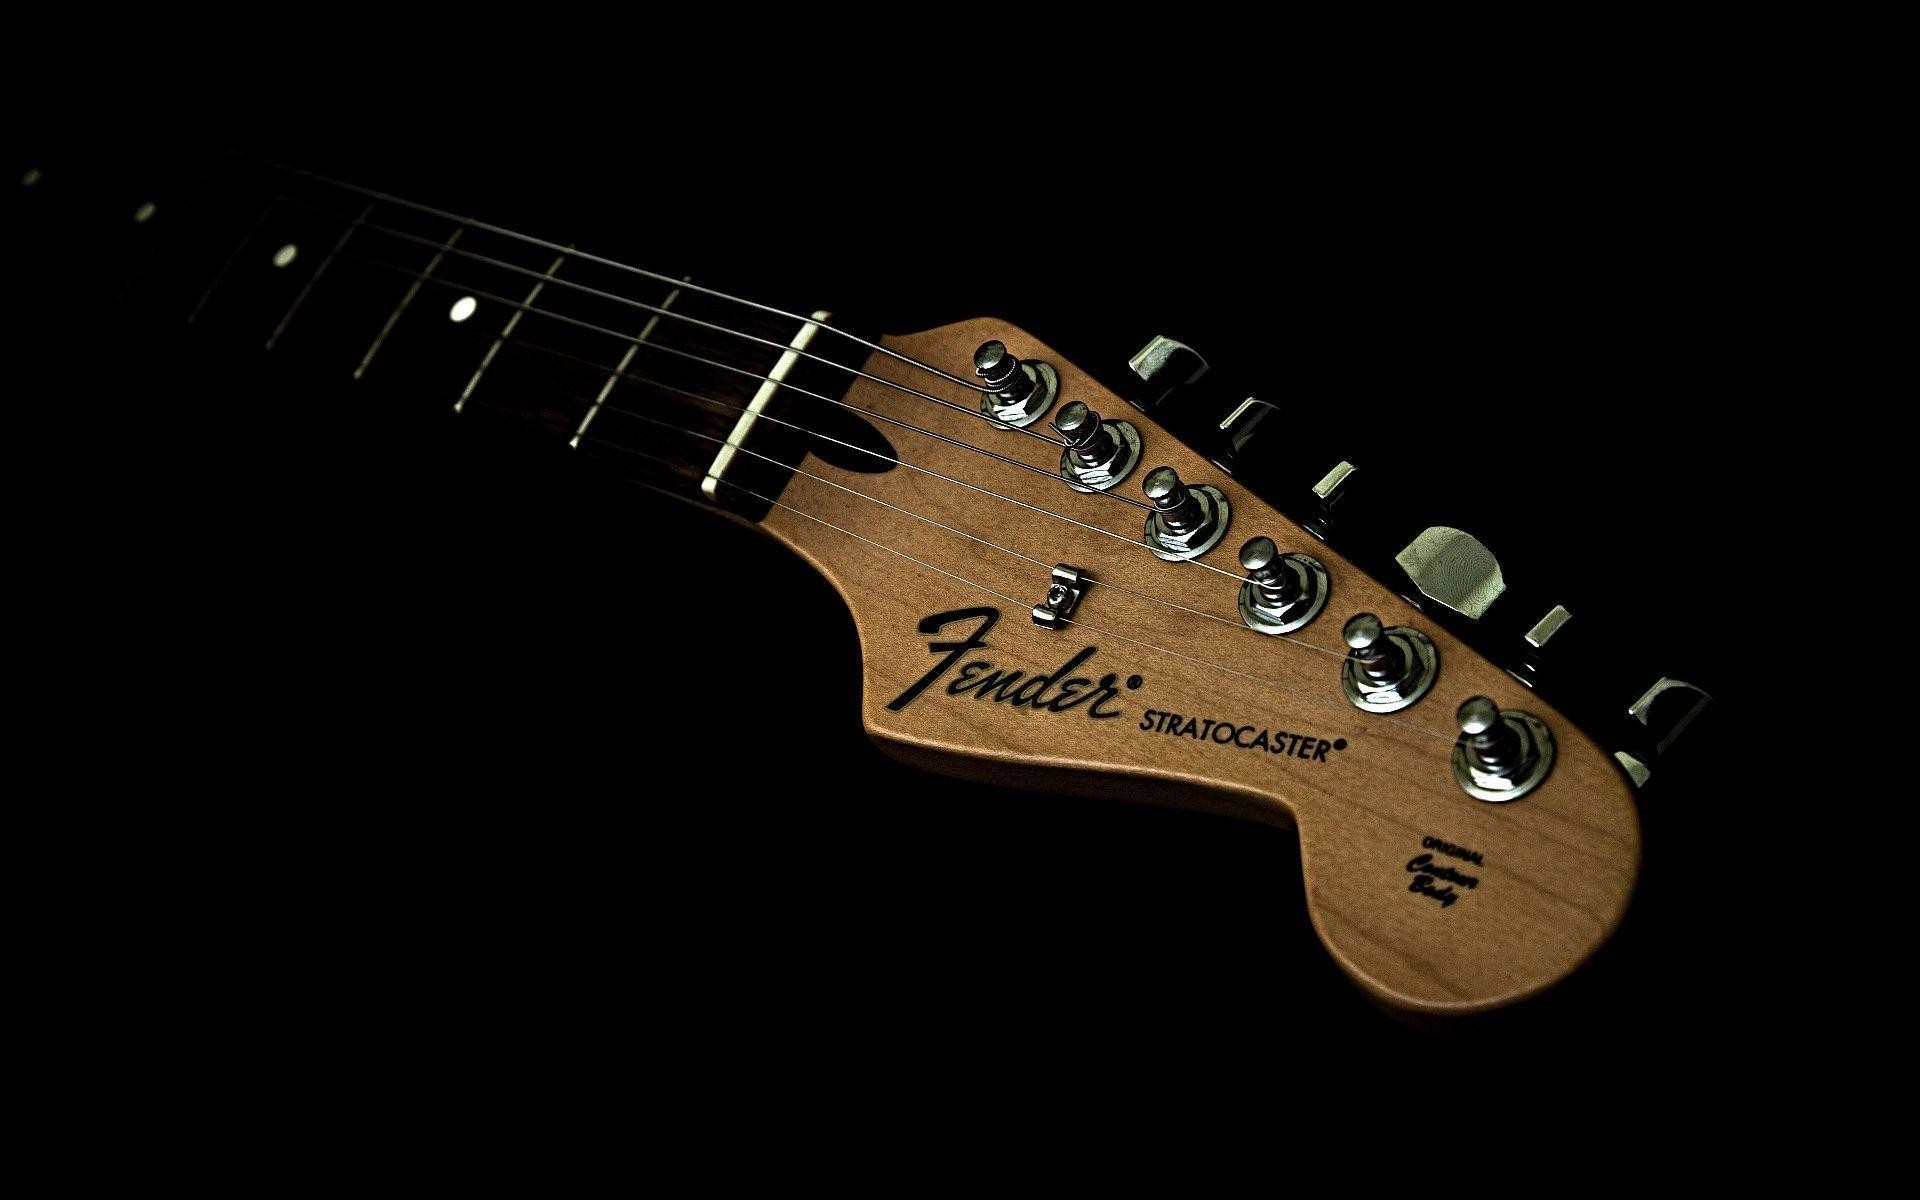 200+ Free Fender & Guitar Images - Pixabay